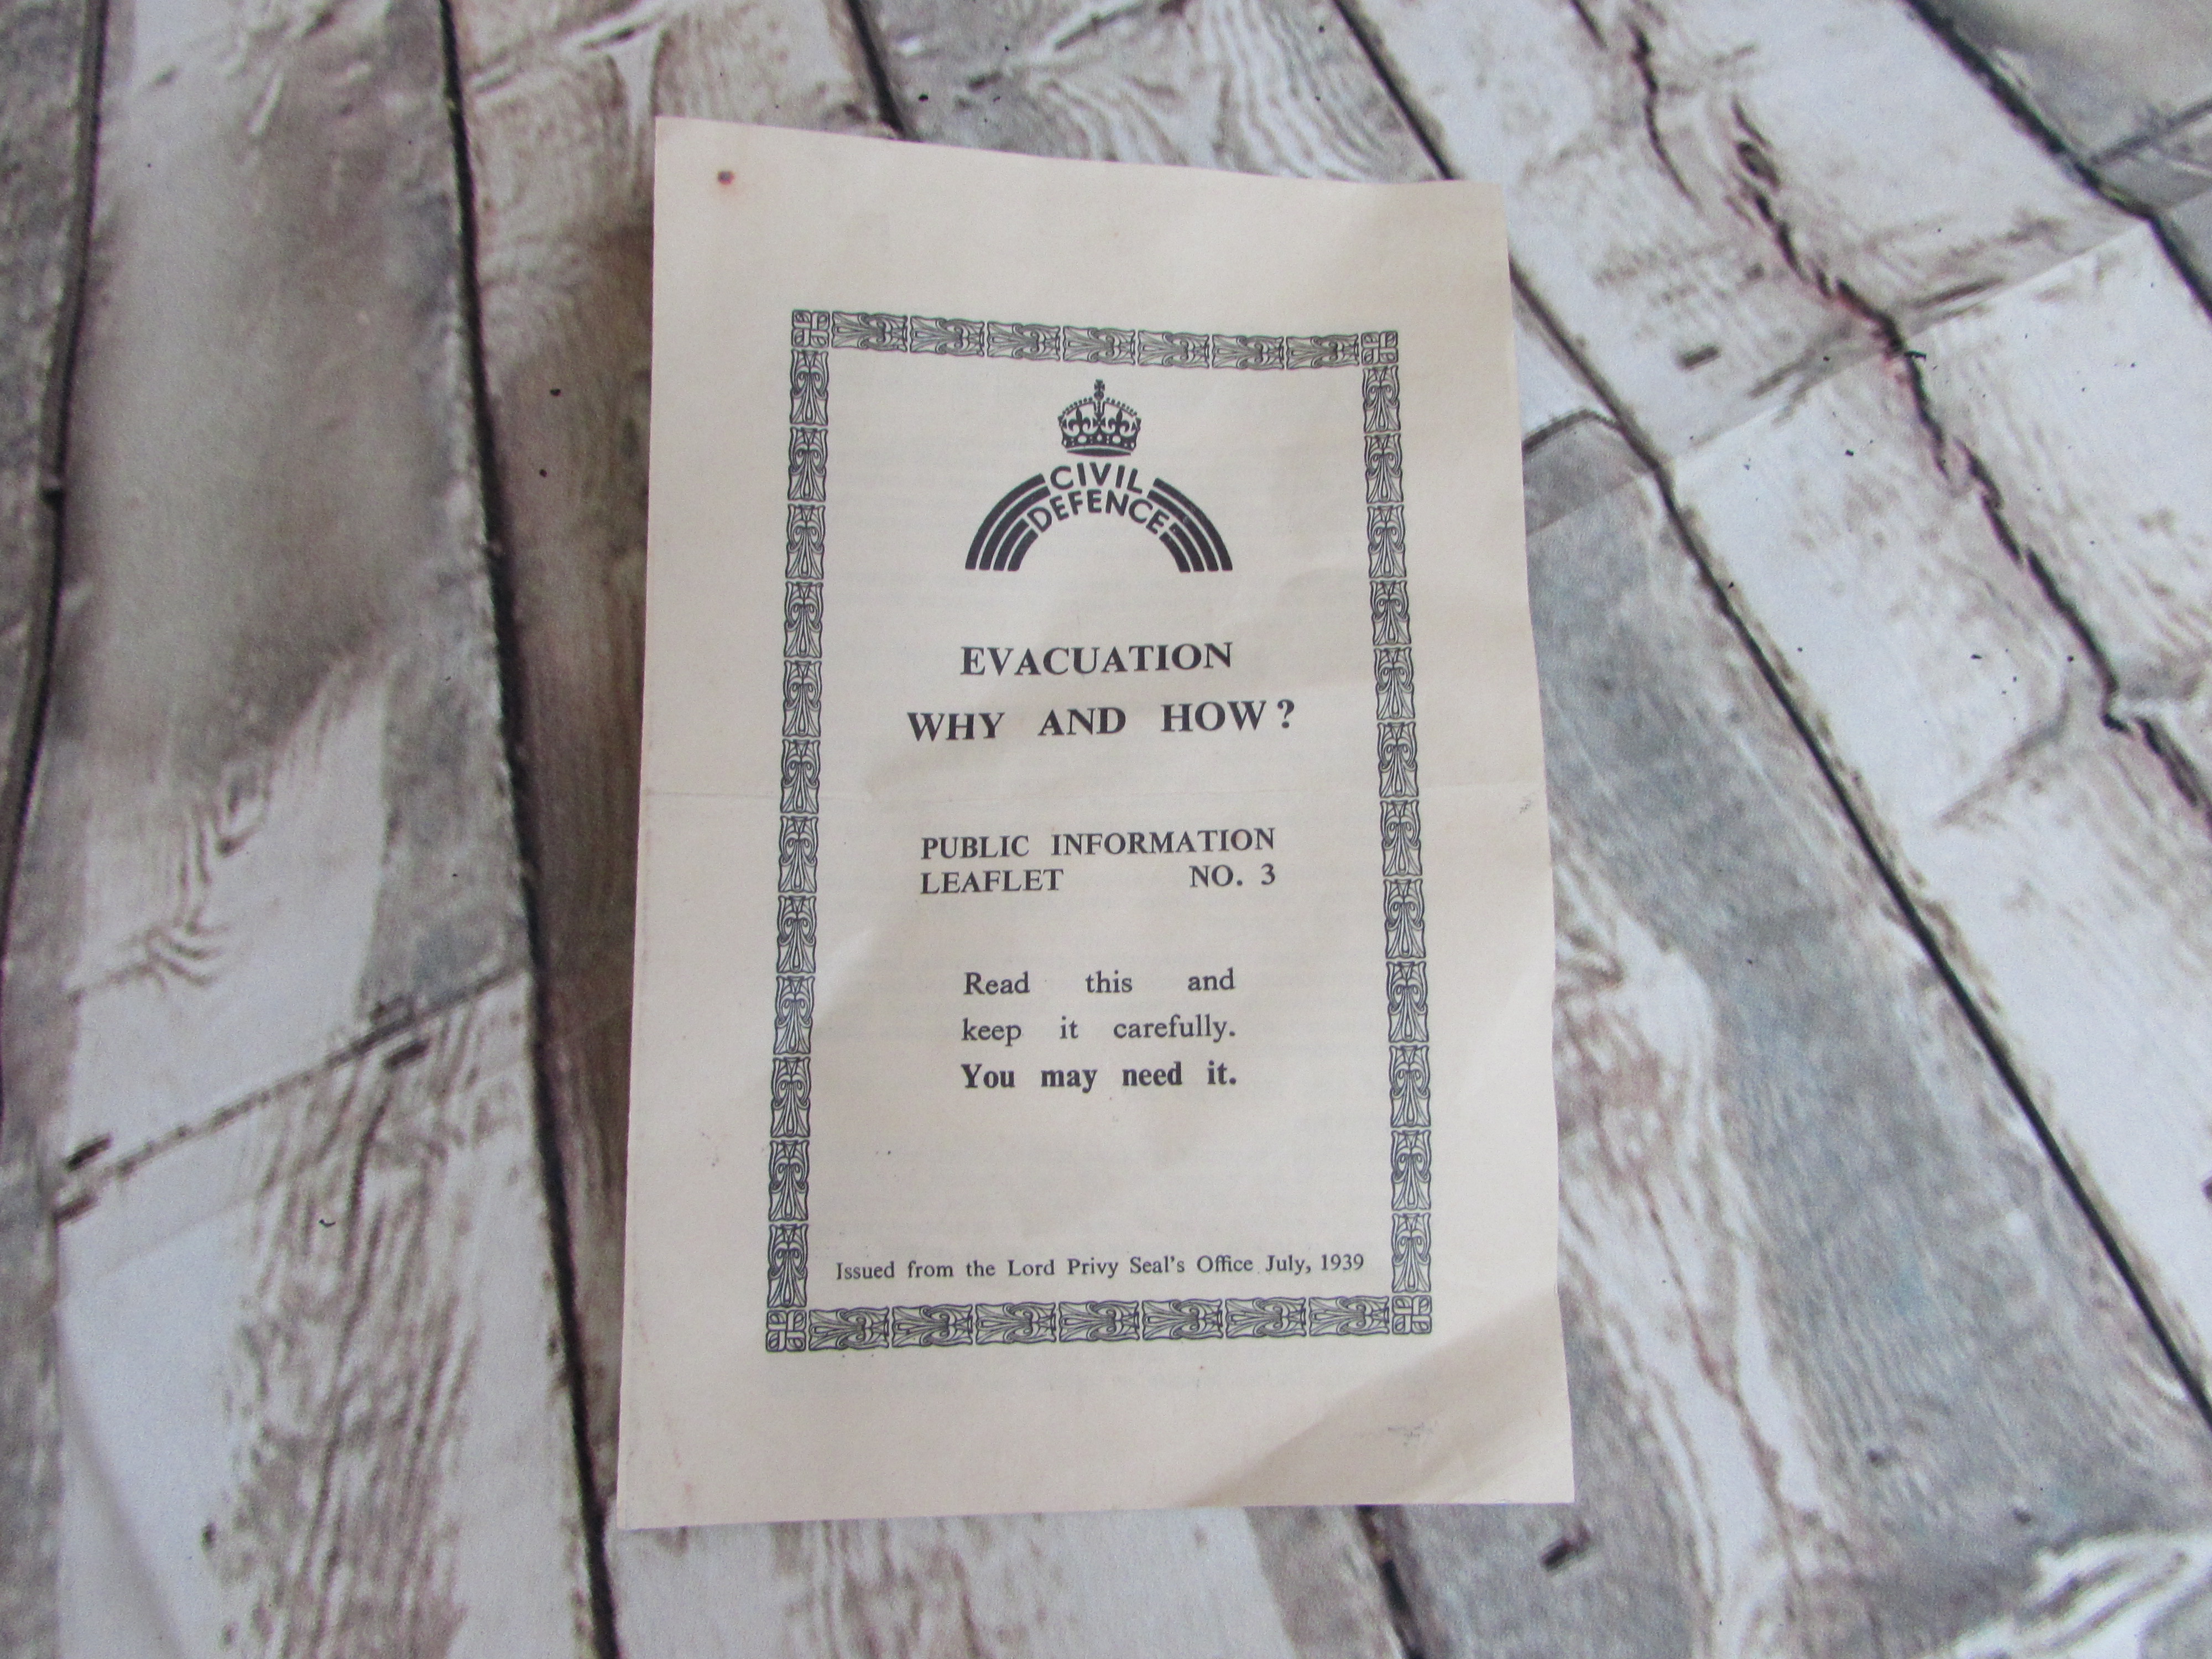 Evacuation leaflet (1939)